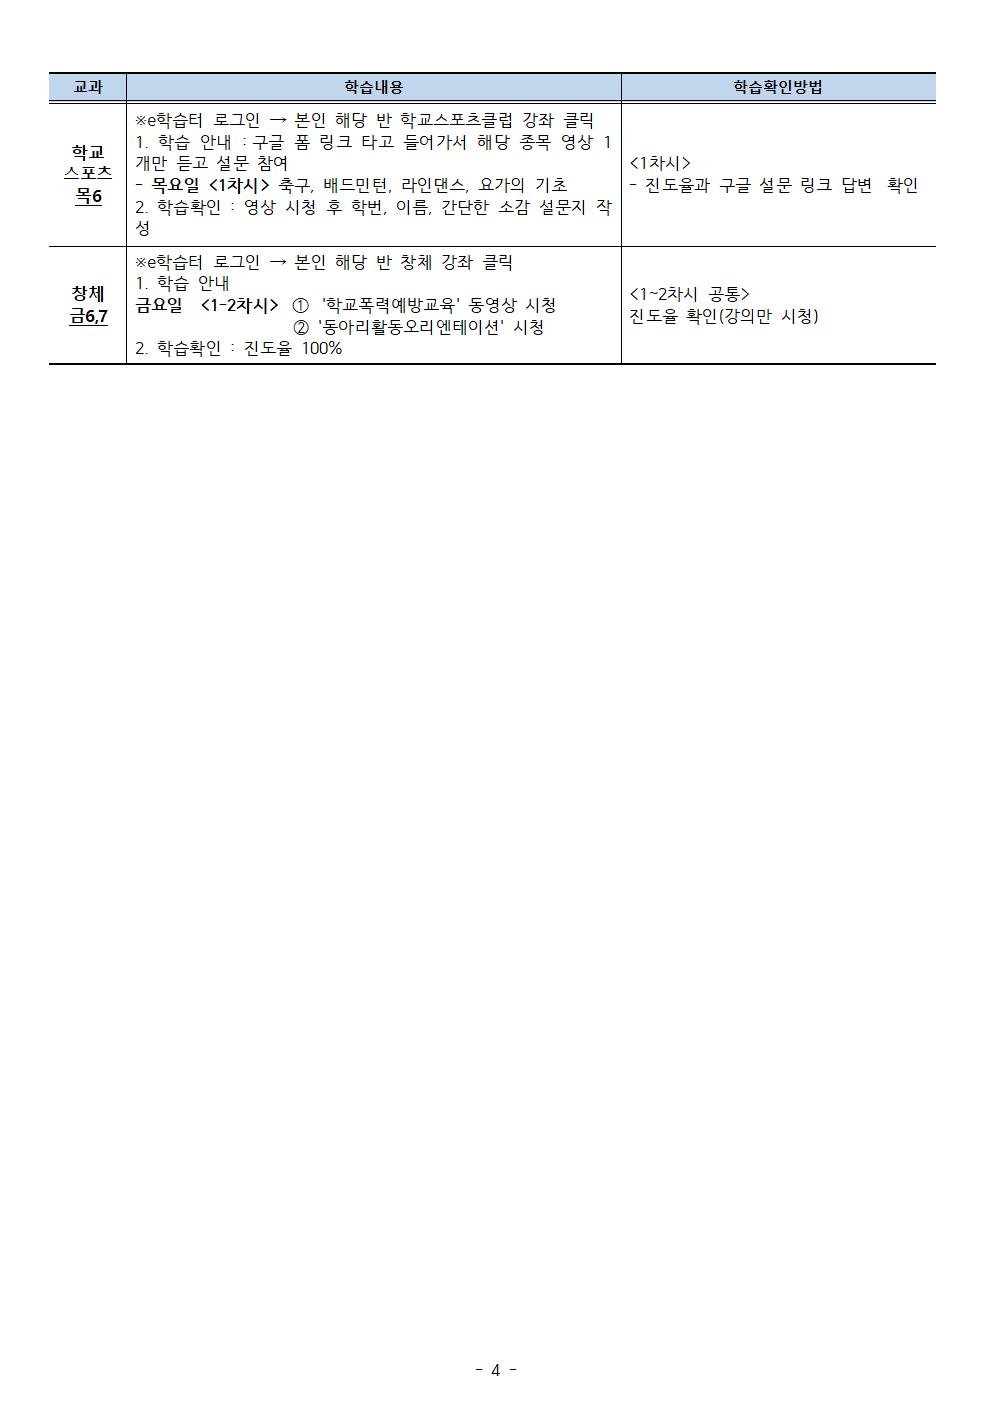 【5월4주차】2학년온라인학습내용 안내 탑재용(5.18-22)004